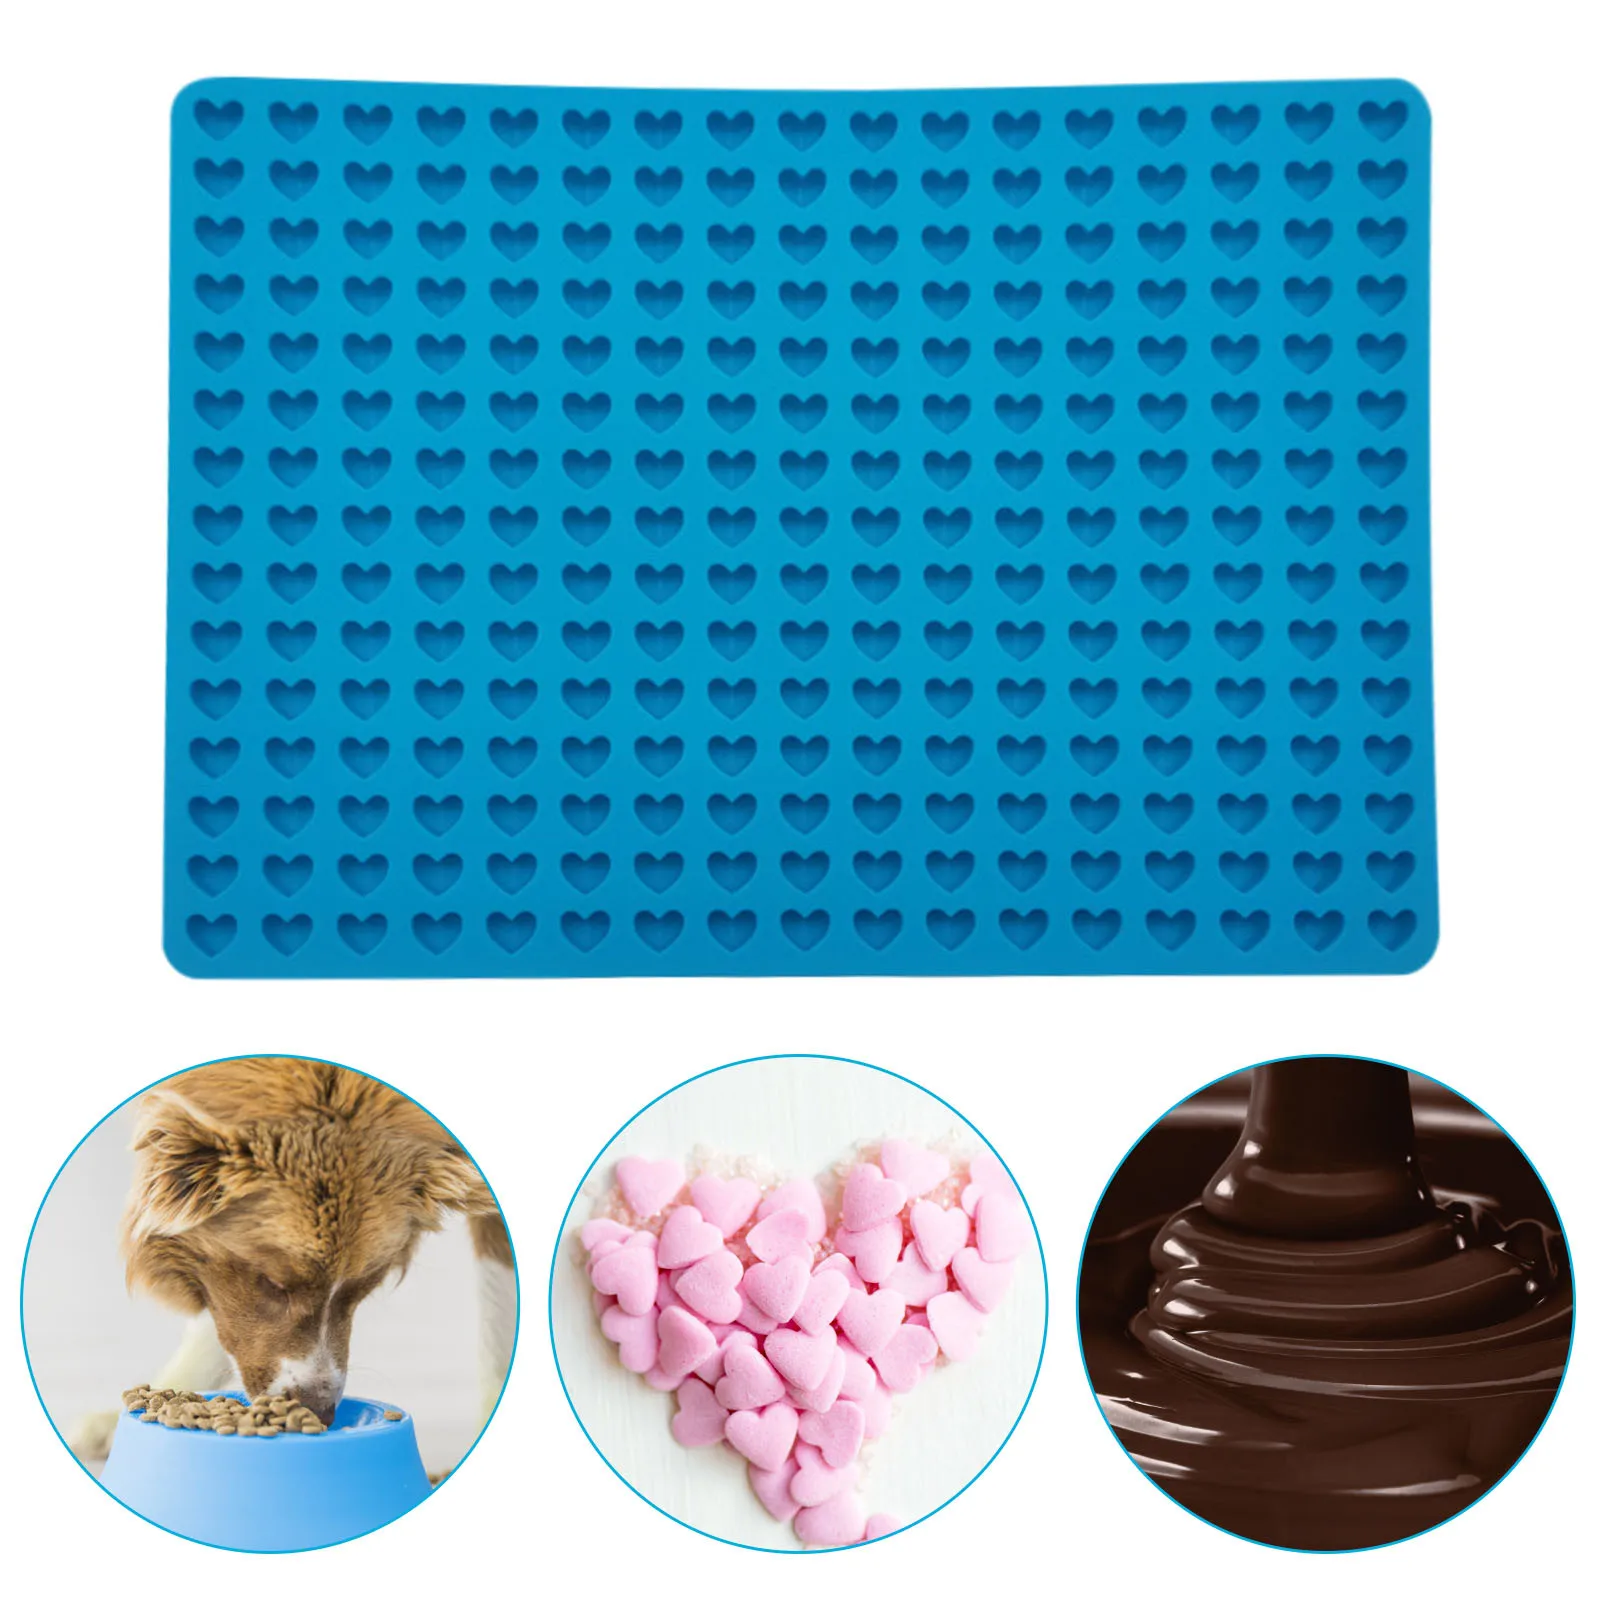 

Силиконовая форма для домашних животных, печенье в форме сердца с 255 отверстиями, форма для выпечки домашних животных, печенье, шоколад, небольшие пирожные